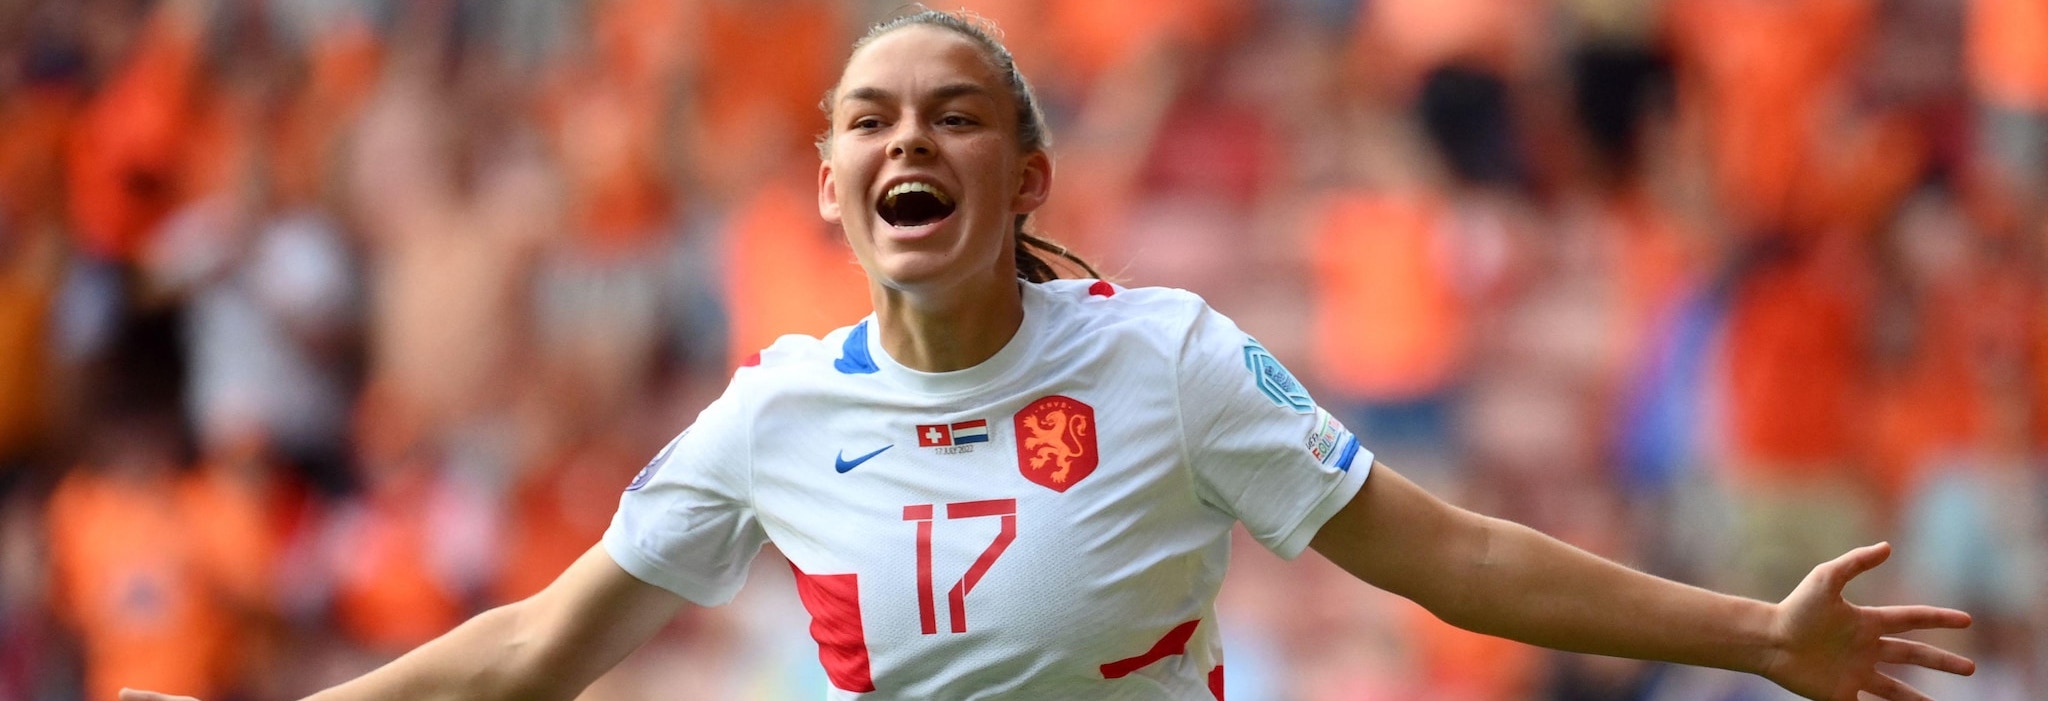 Piala Eropa Wanita 2022: Swedia dan Belanda Pastikan Tiket ke Babak Perempat Final